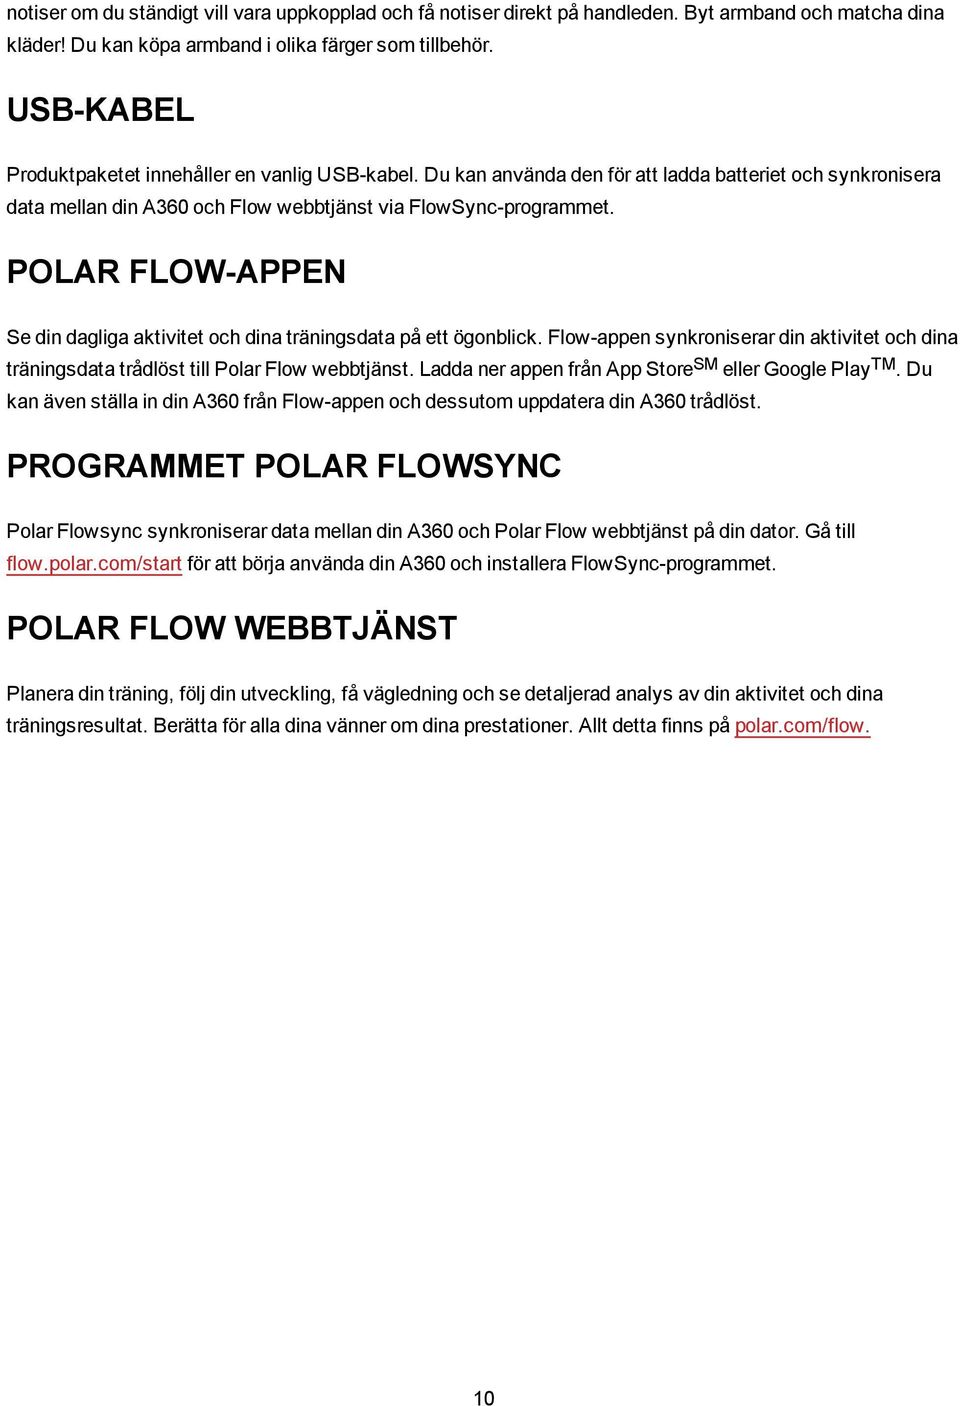 POLAR FLOW-APPEN Se din dagliga aktivitet och dina träningsdata på ett ögonblick. Flow-appen synkroniserar din aktivitet och dina träningsdata trådlöst till Polar Flow webbtjänst.